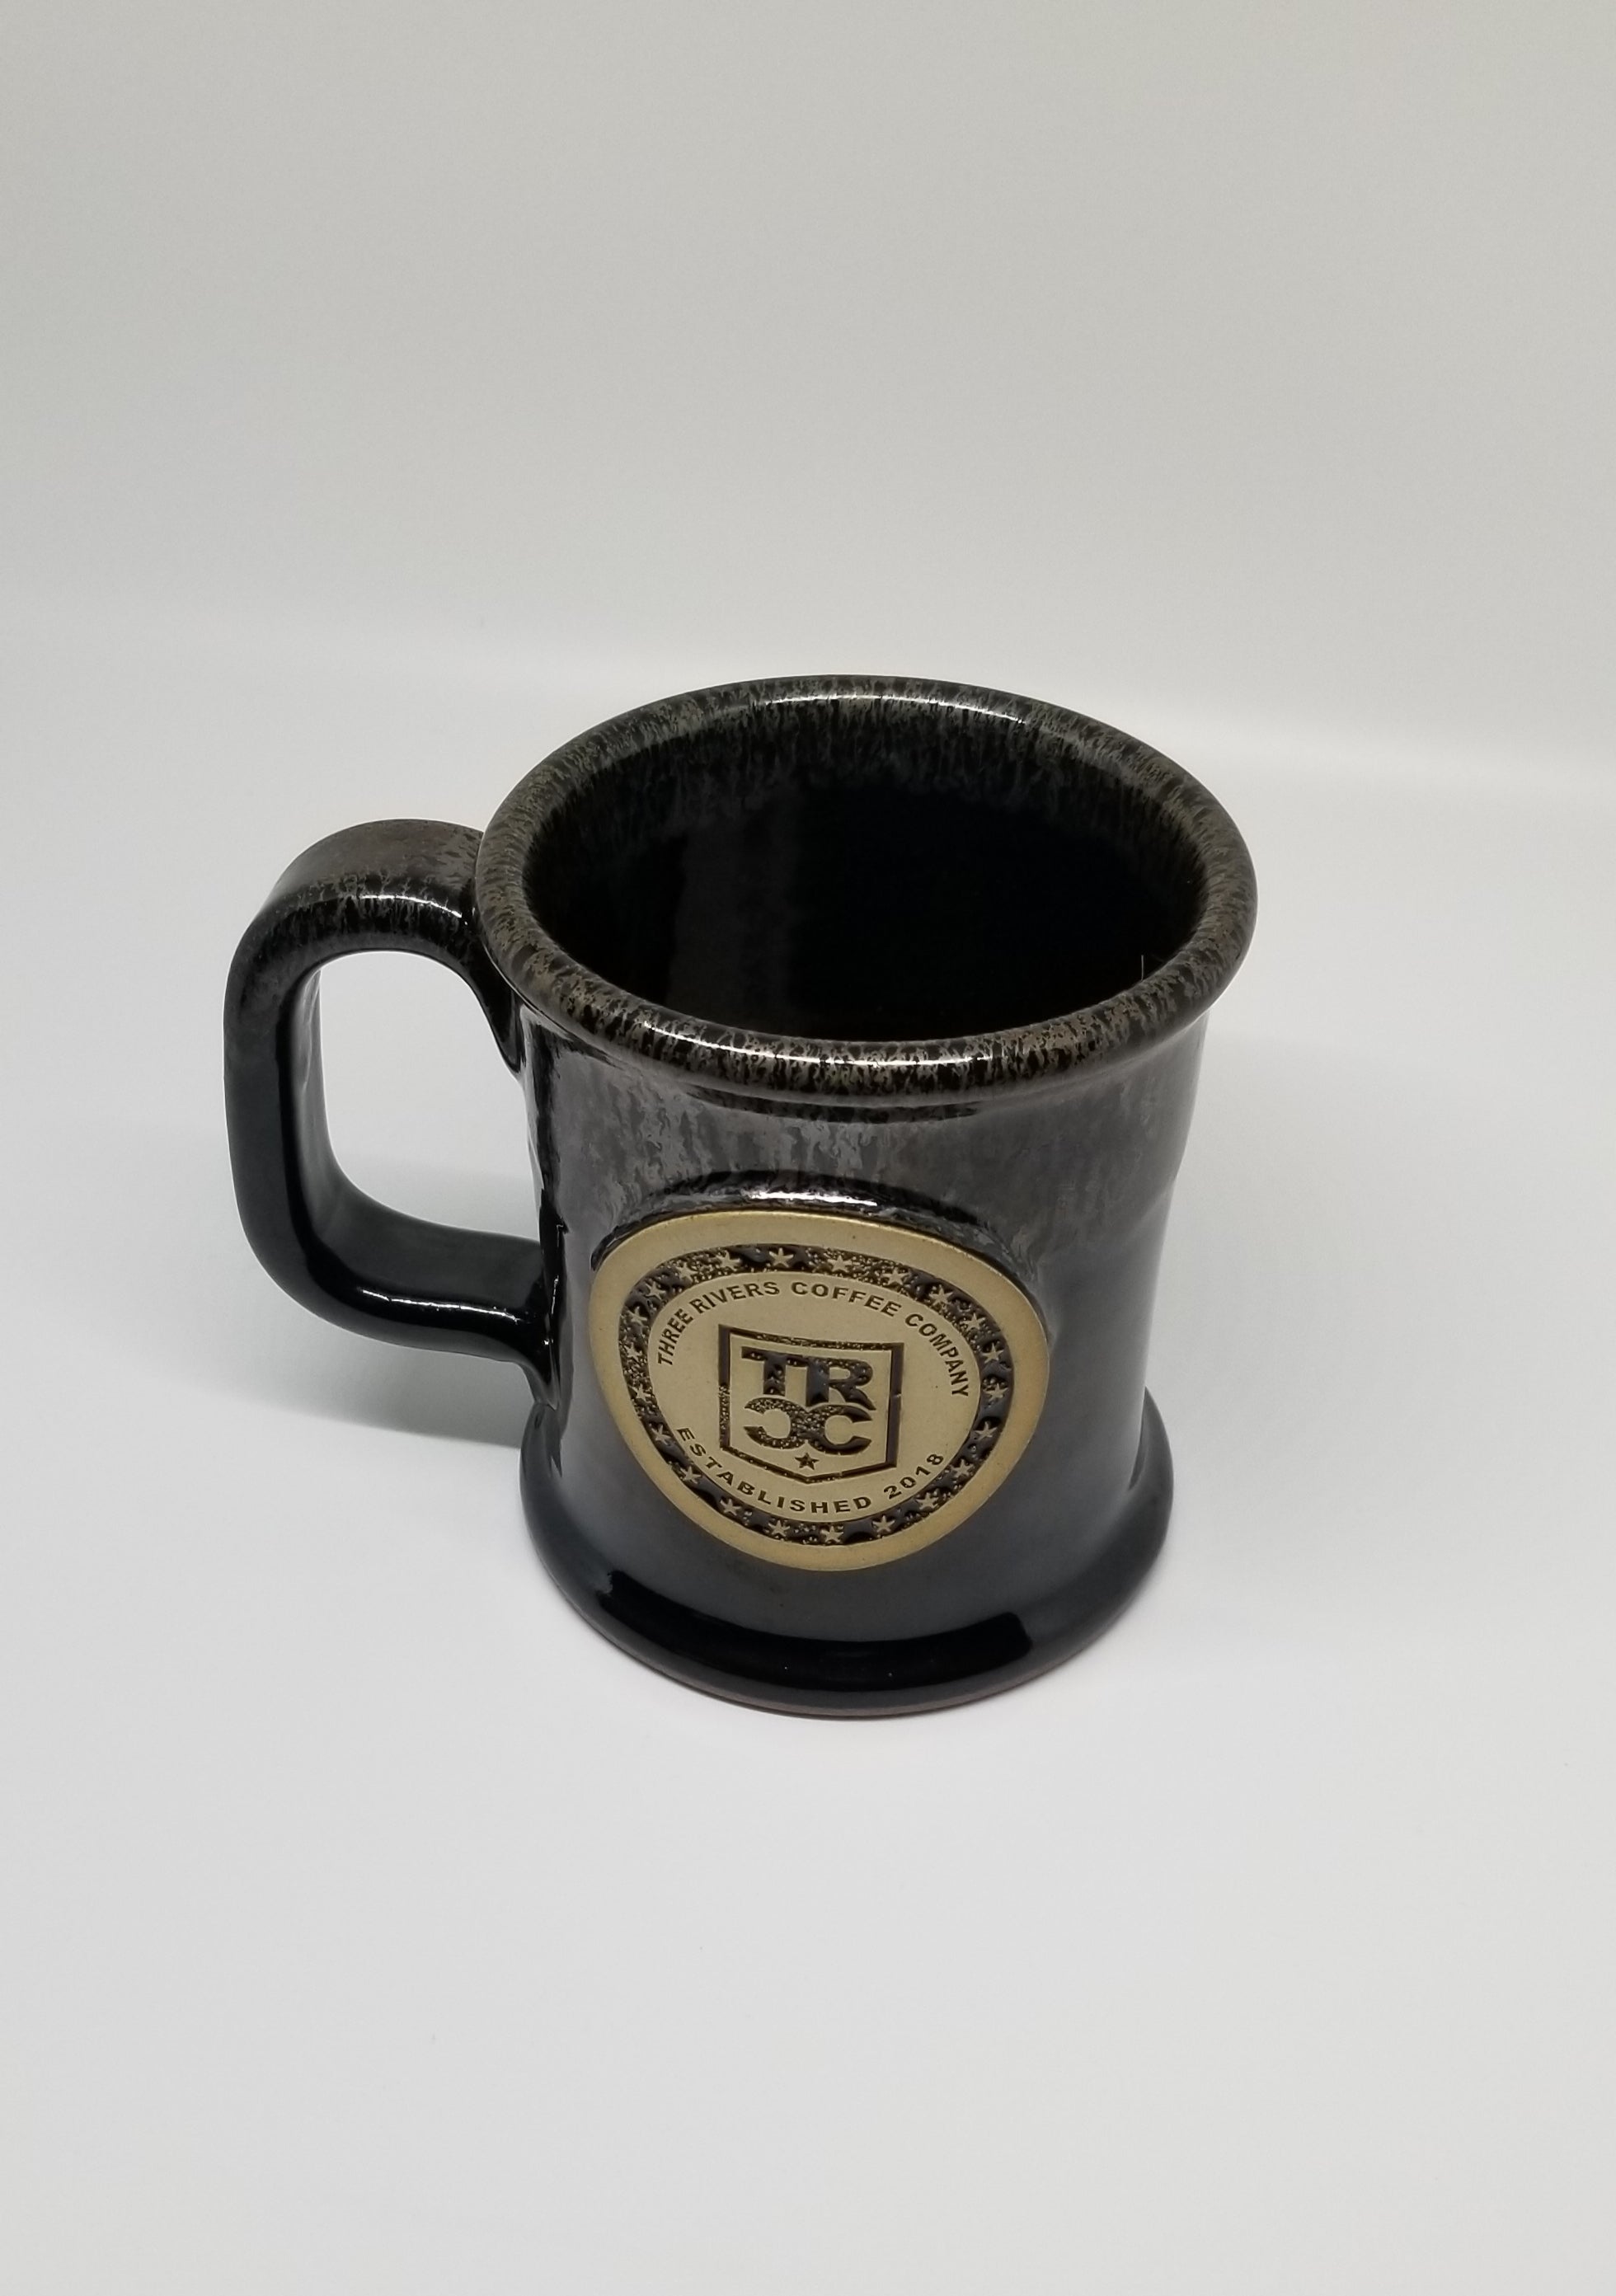 TRCC Yeti Rambler 14oz Mug - Three Rivers Coffee Company